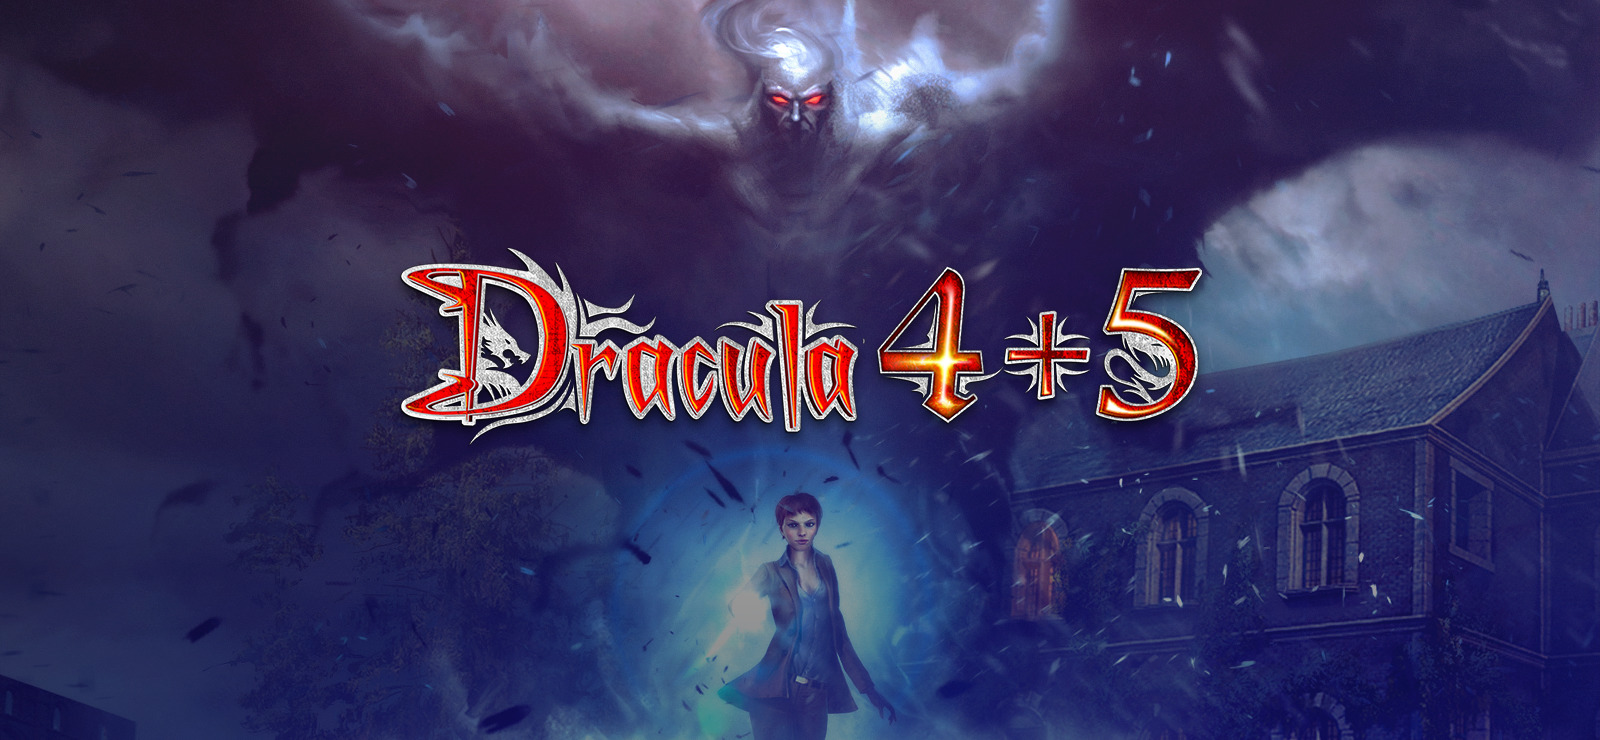 Recensione Dracula 4 e 5: l'edizione speciale Steam 1